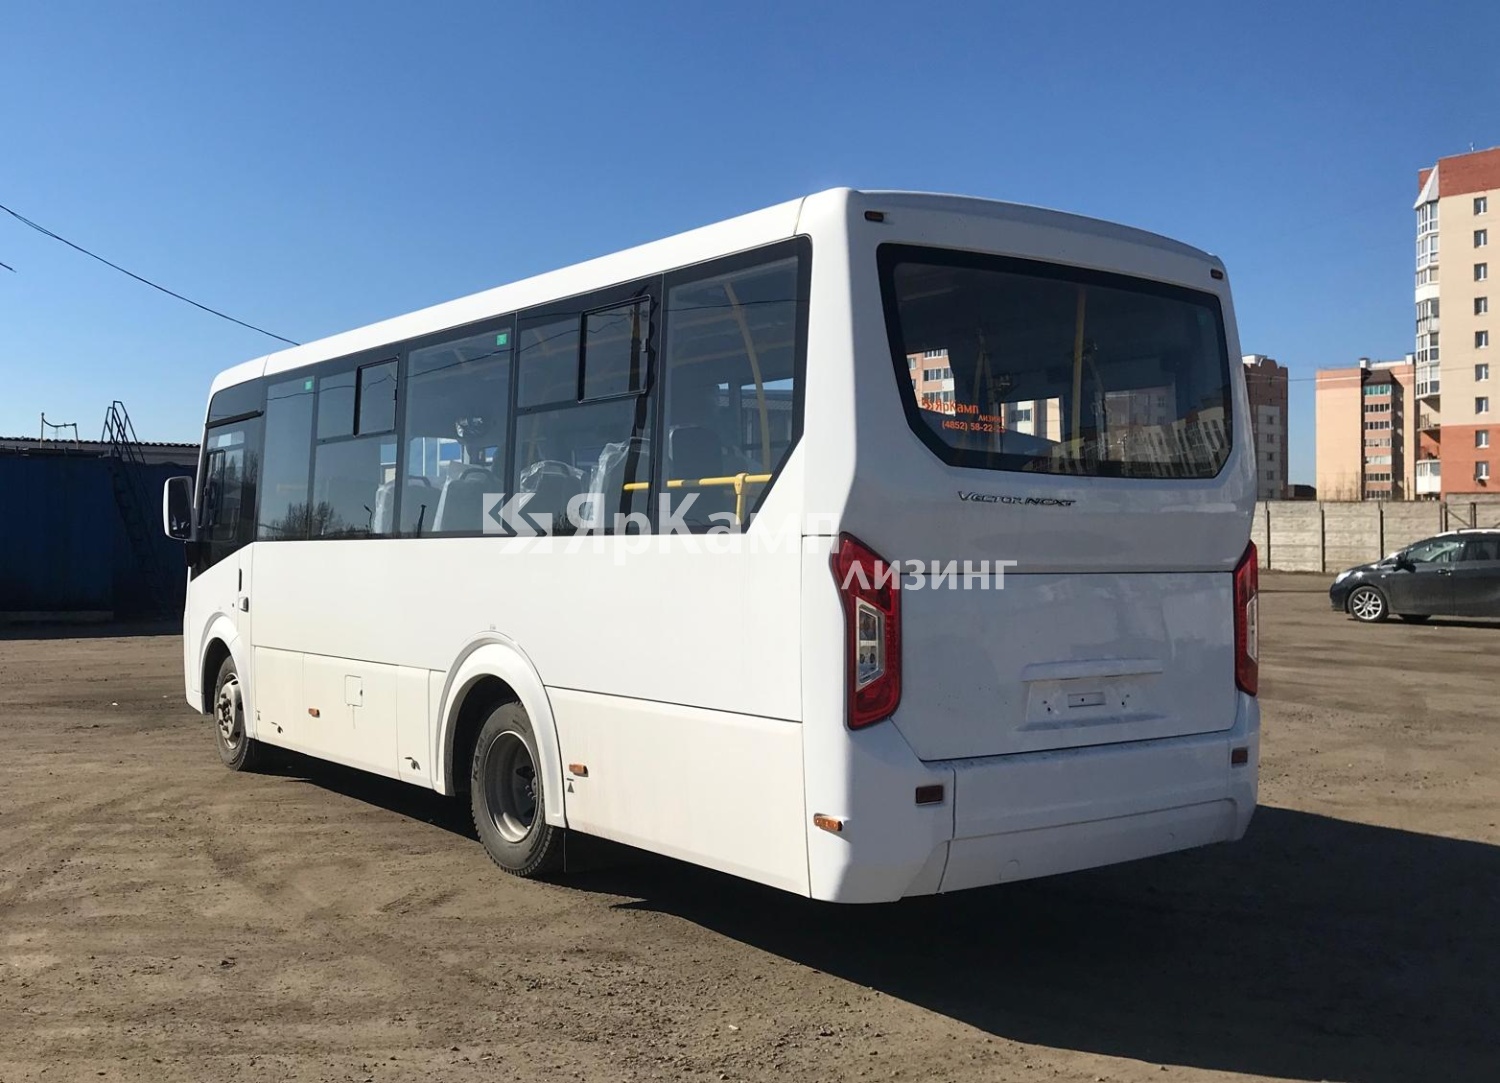 Автобус Vector NEXT (320435-04) в заводском исполнении "Доступная среда" поставлен на условиях лизинга